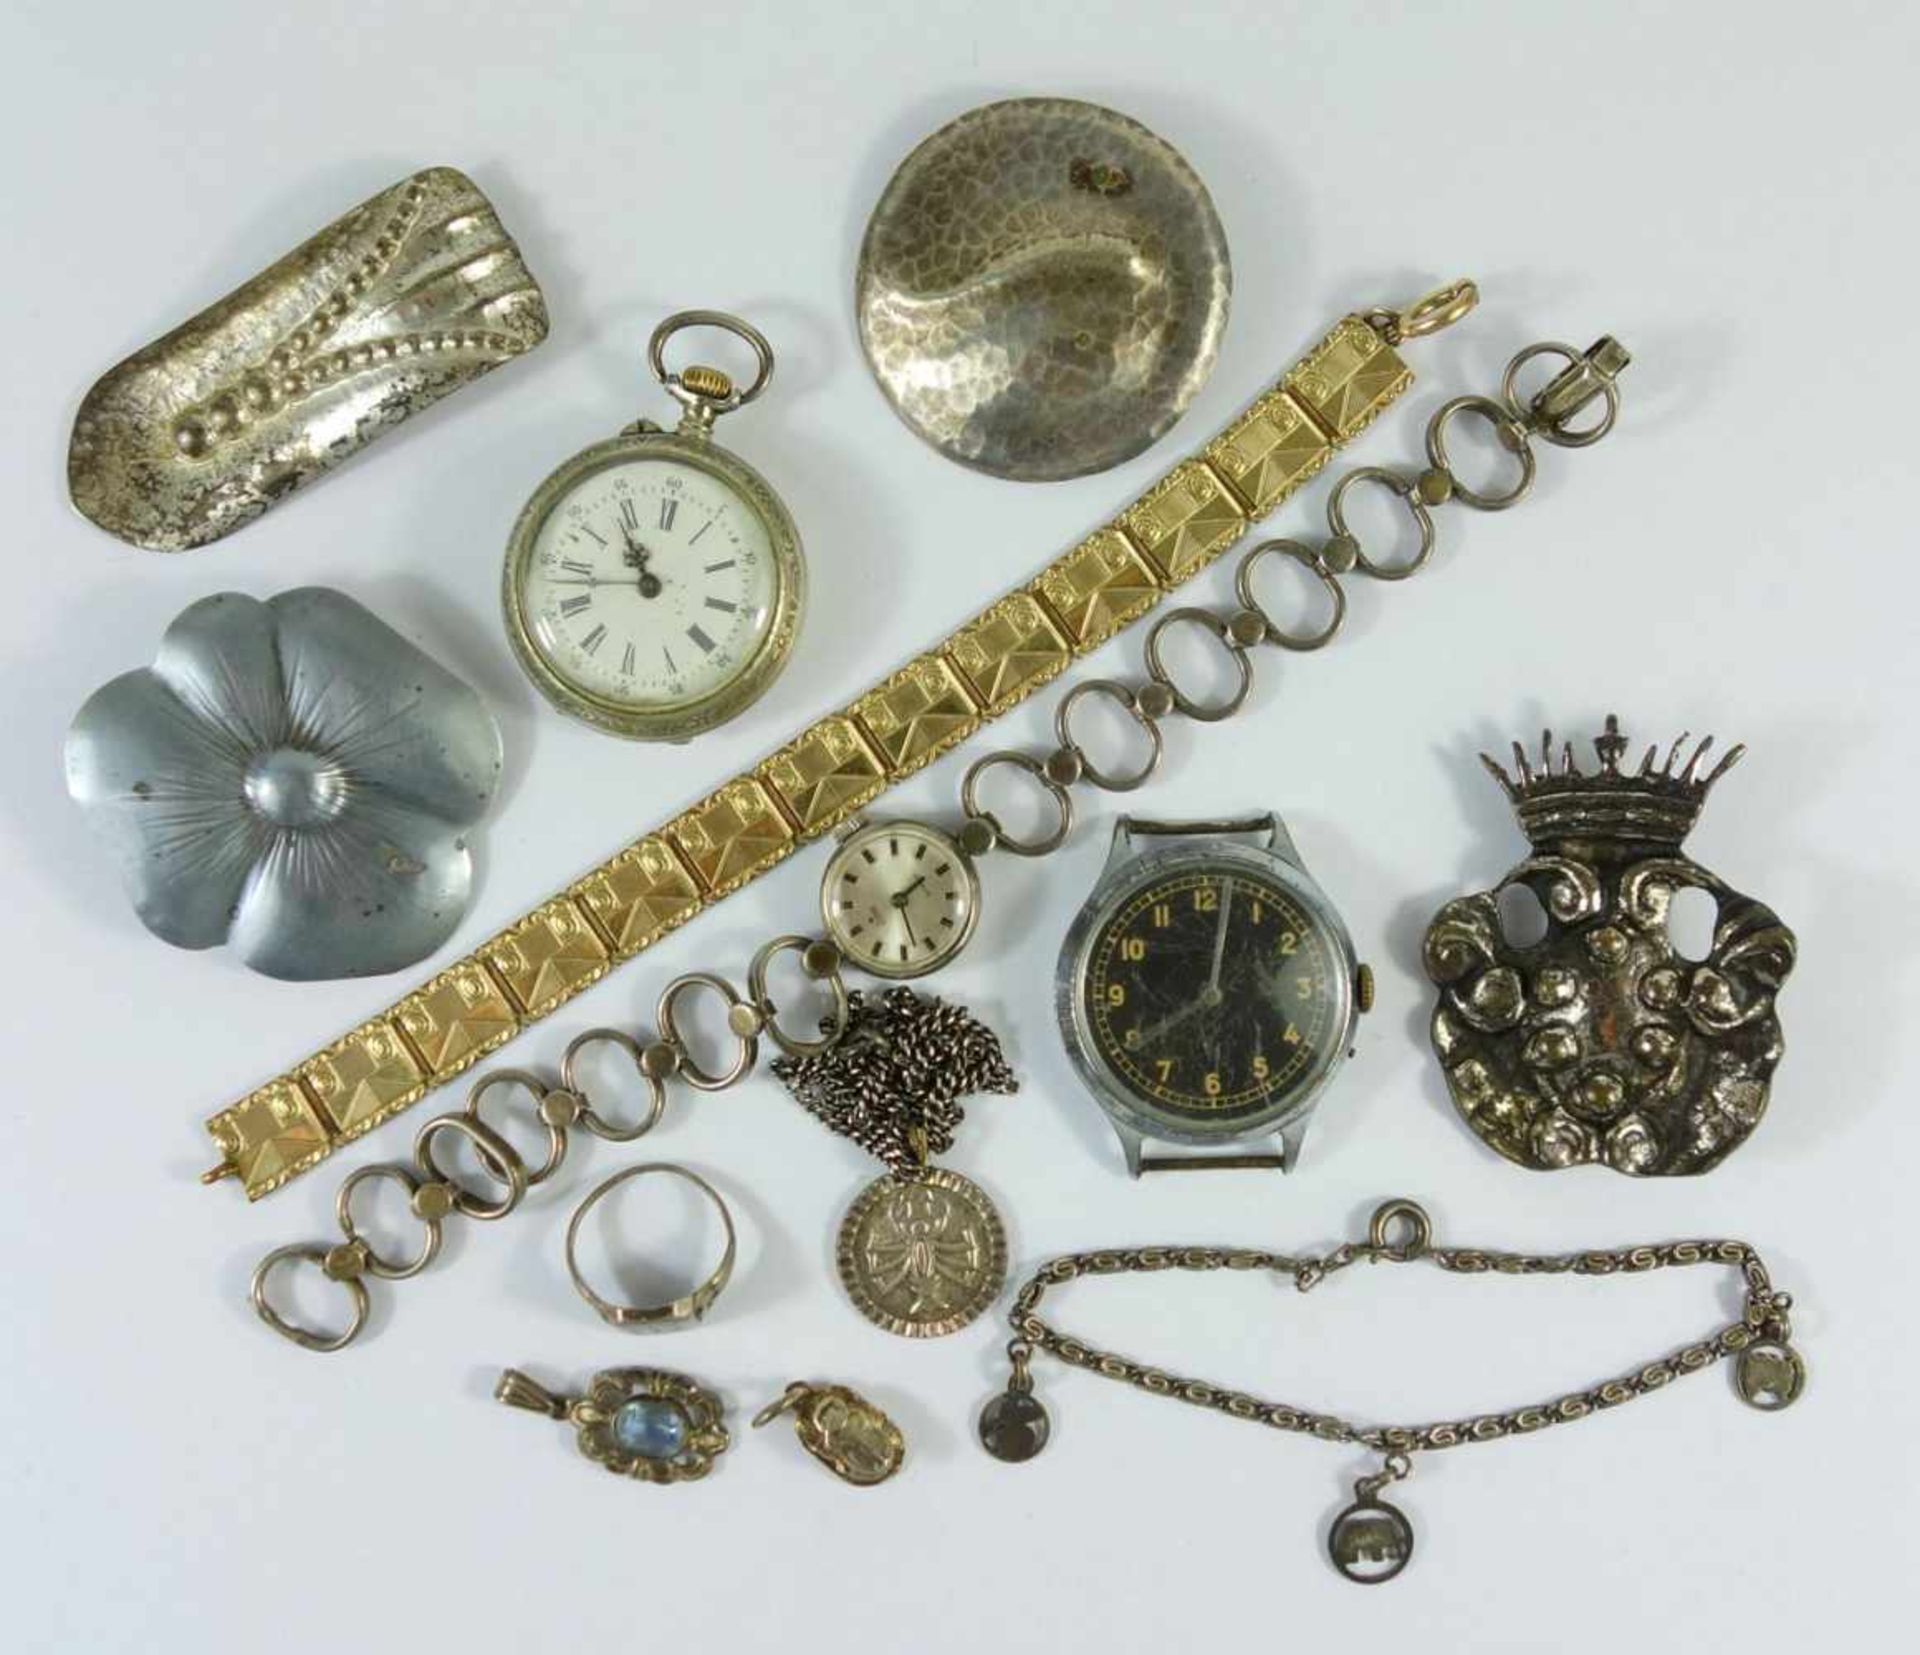 13 Teile Silber- , Modeschmuck und 3 Uhrentlw.defekt; u.a. kleiner Anhänger, 835er Ag, Taschenuhr (